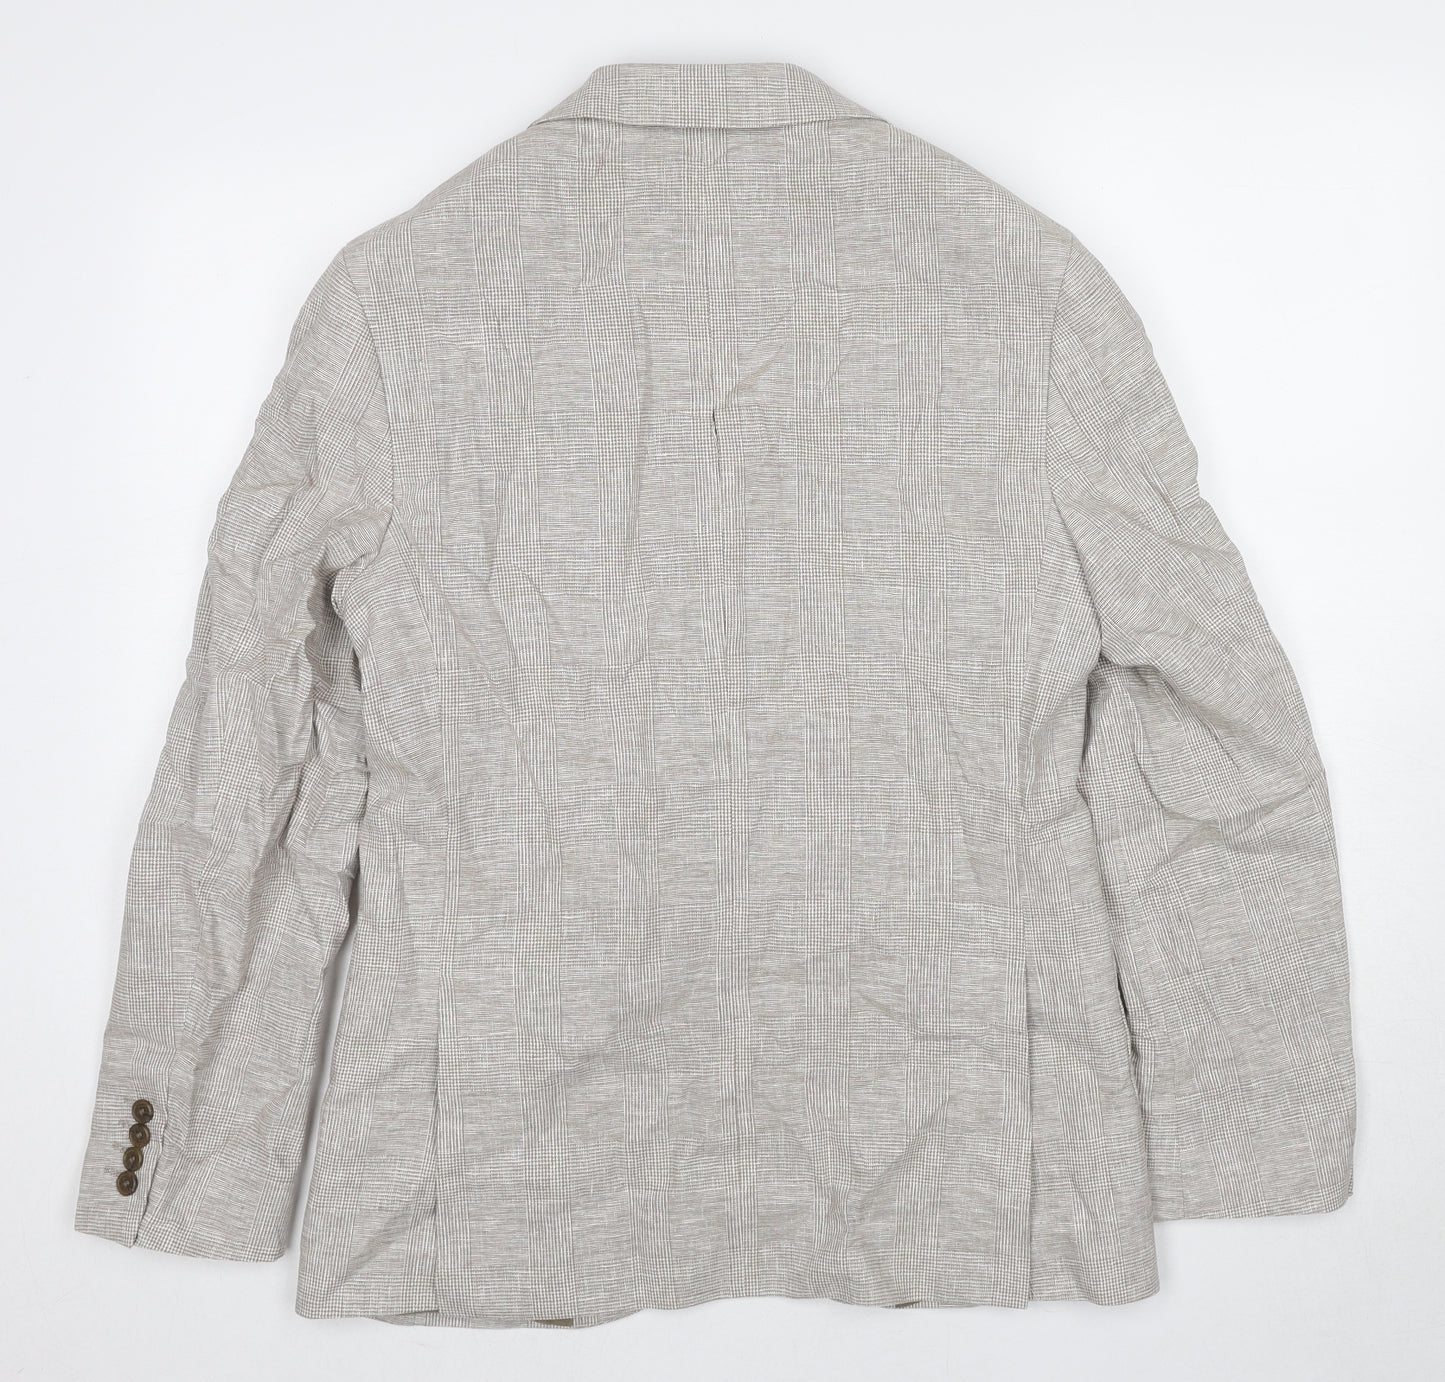 Marks and Spencer Mens Beige Plaid Linen Jacket Suit Jacket Size 38 Regular